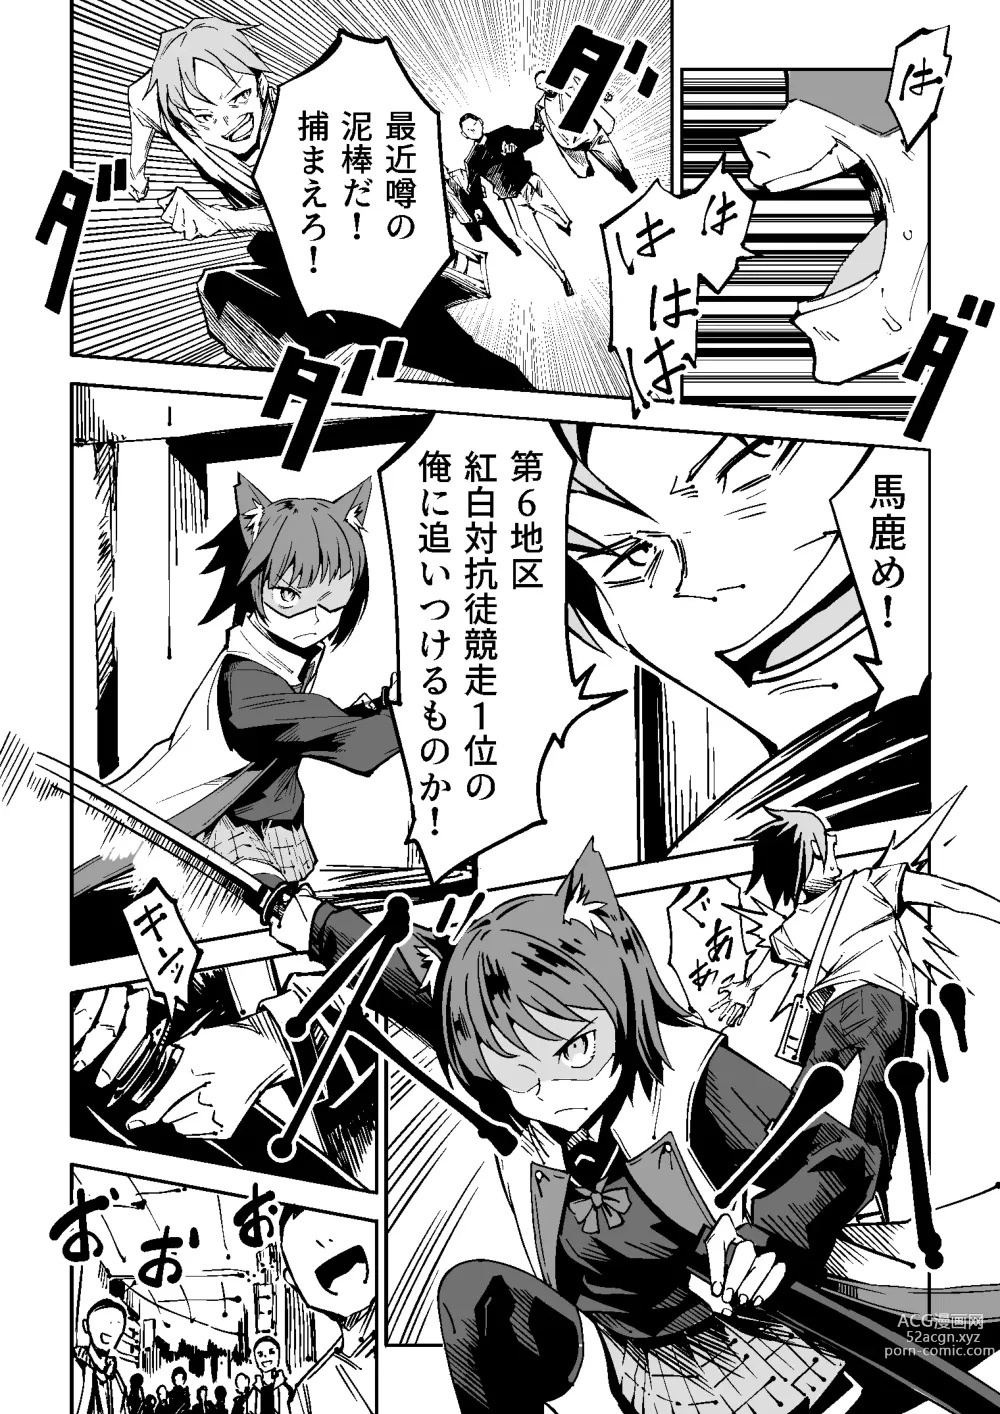 Page 3 of doujinshi NOID Episode:Julius